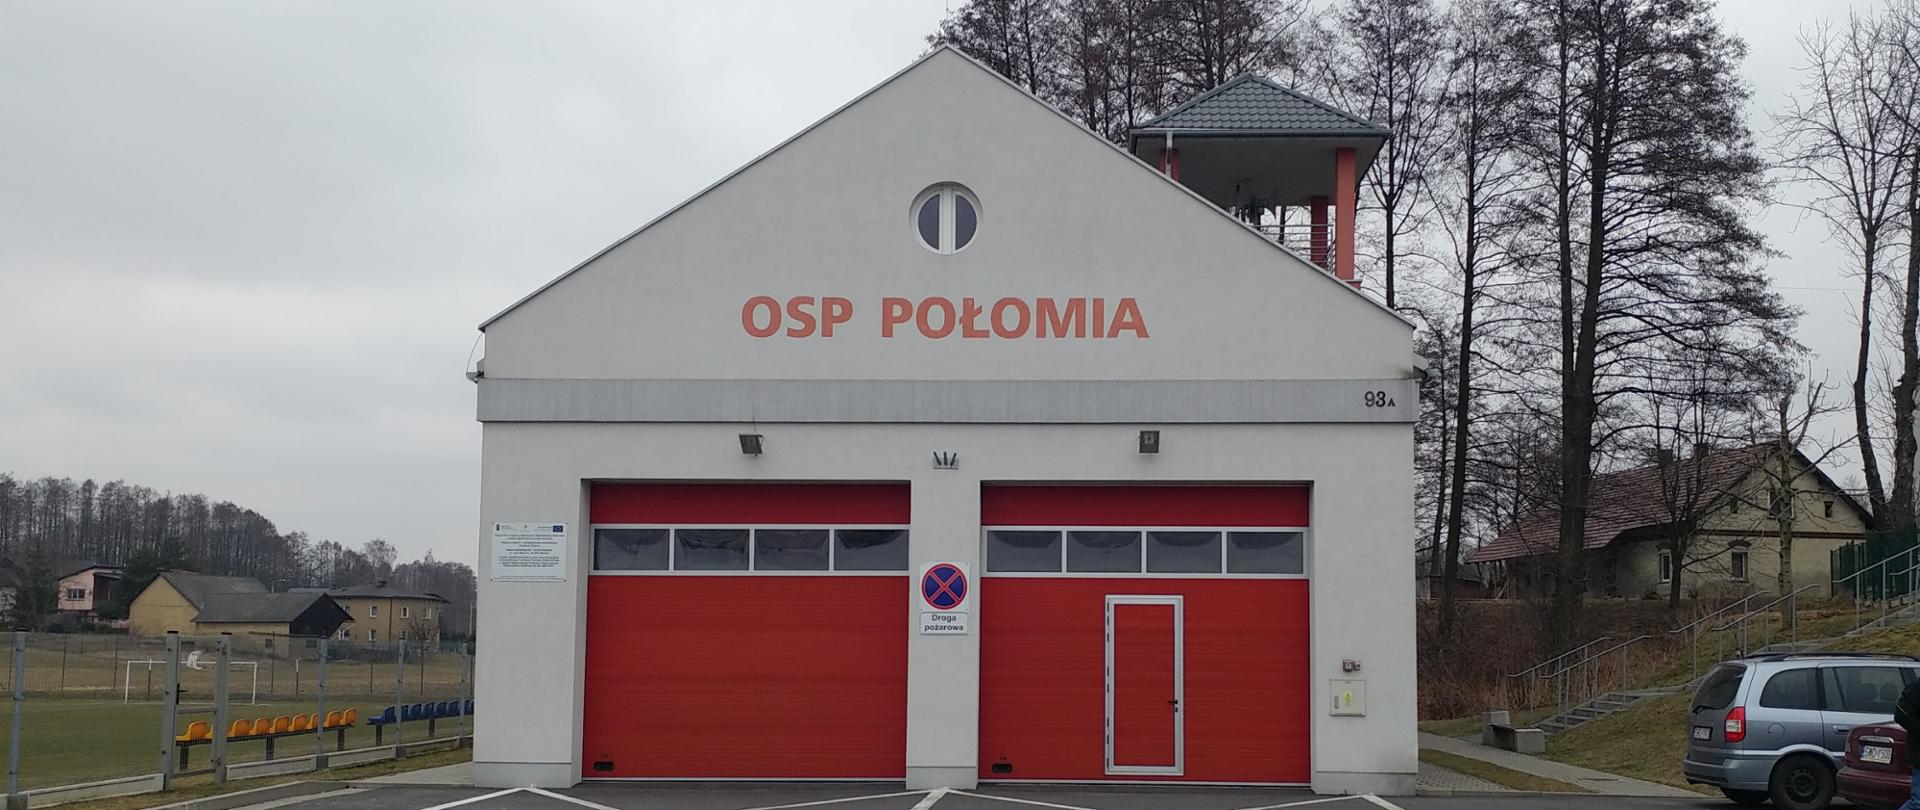 Zdjęcie prezentuje budynek jednostki OSP Połomia